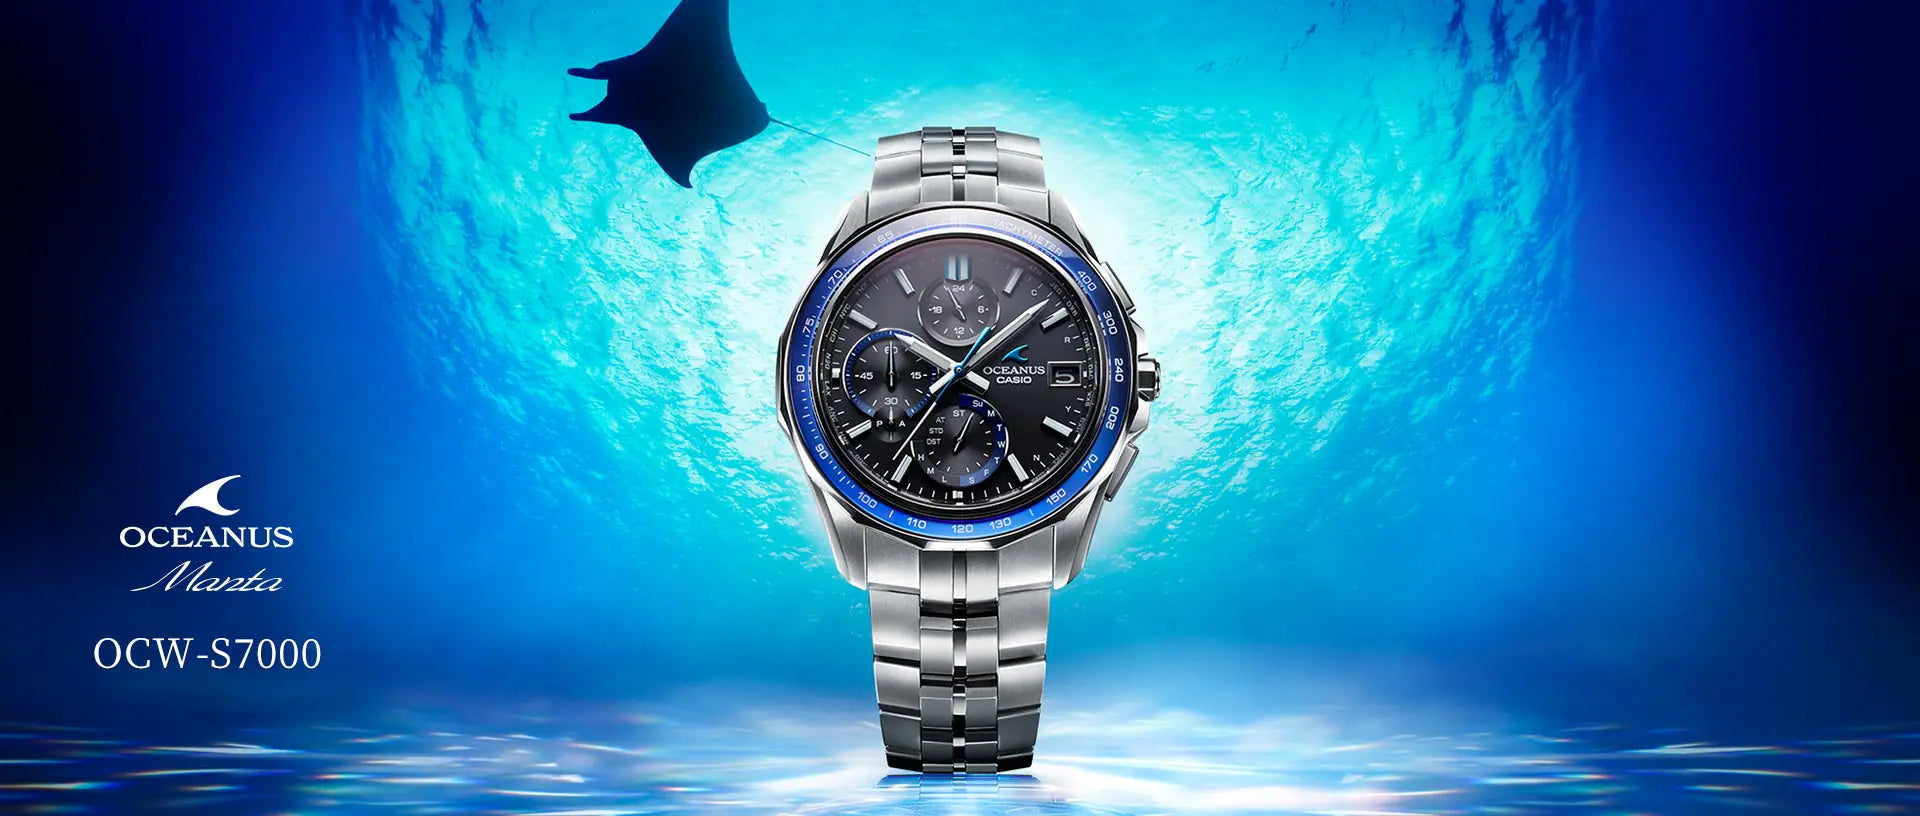 カシオ オシアナス マンタ OCW-S1400- 1AJF 定価￥136,500 - 腕時計 ...